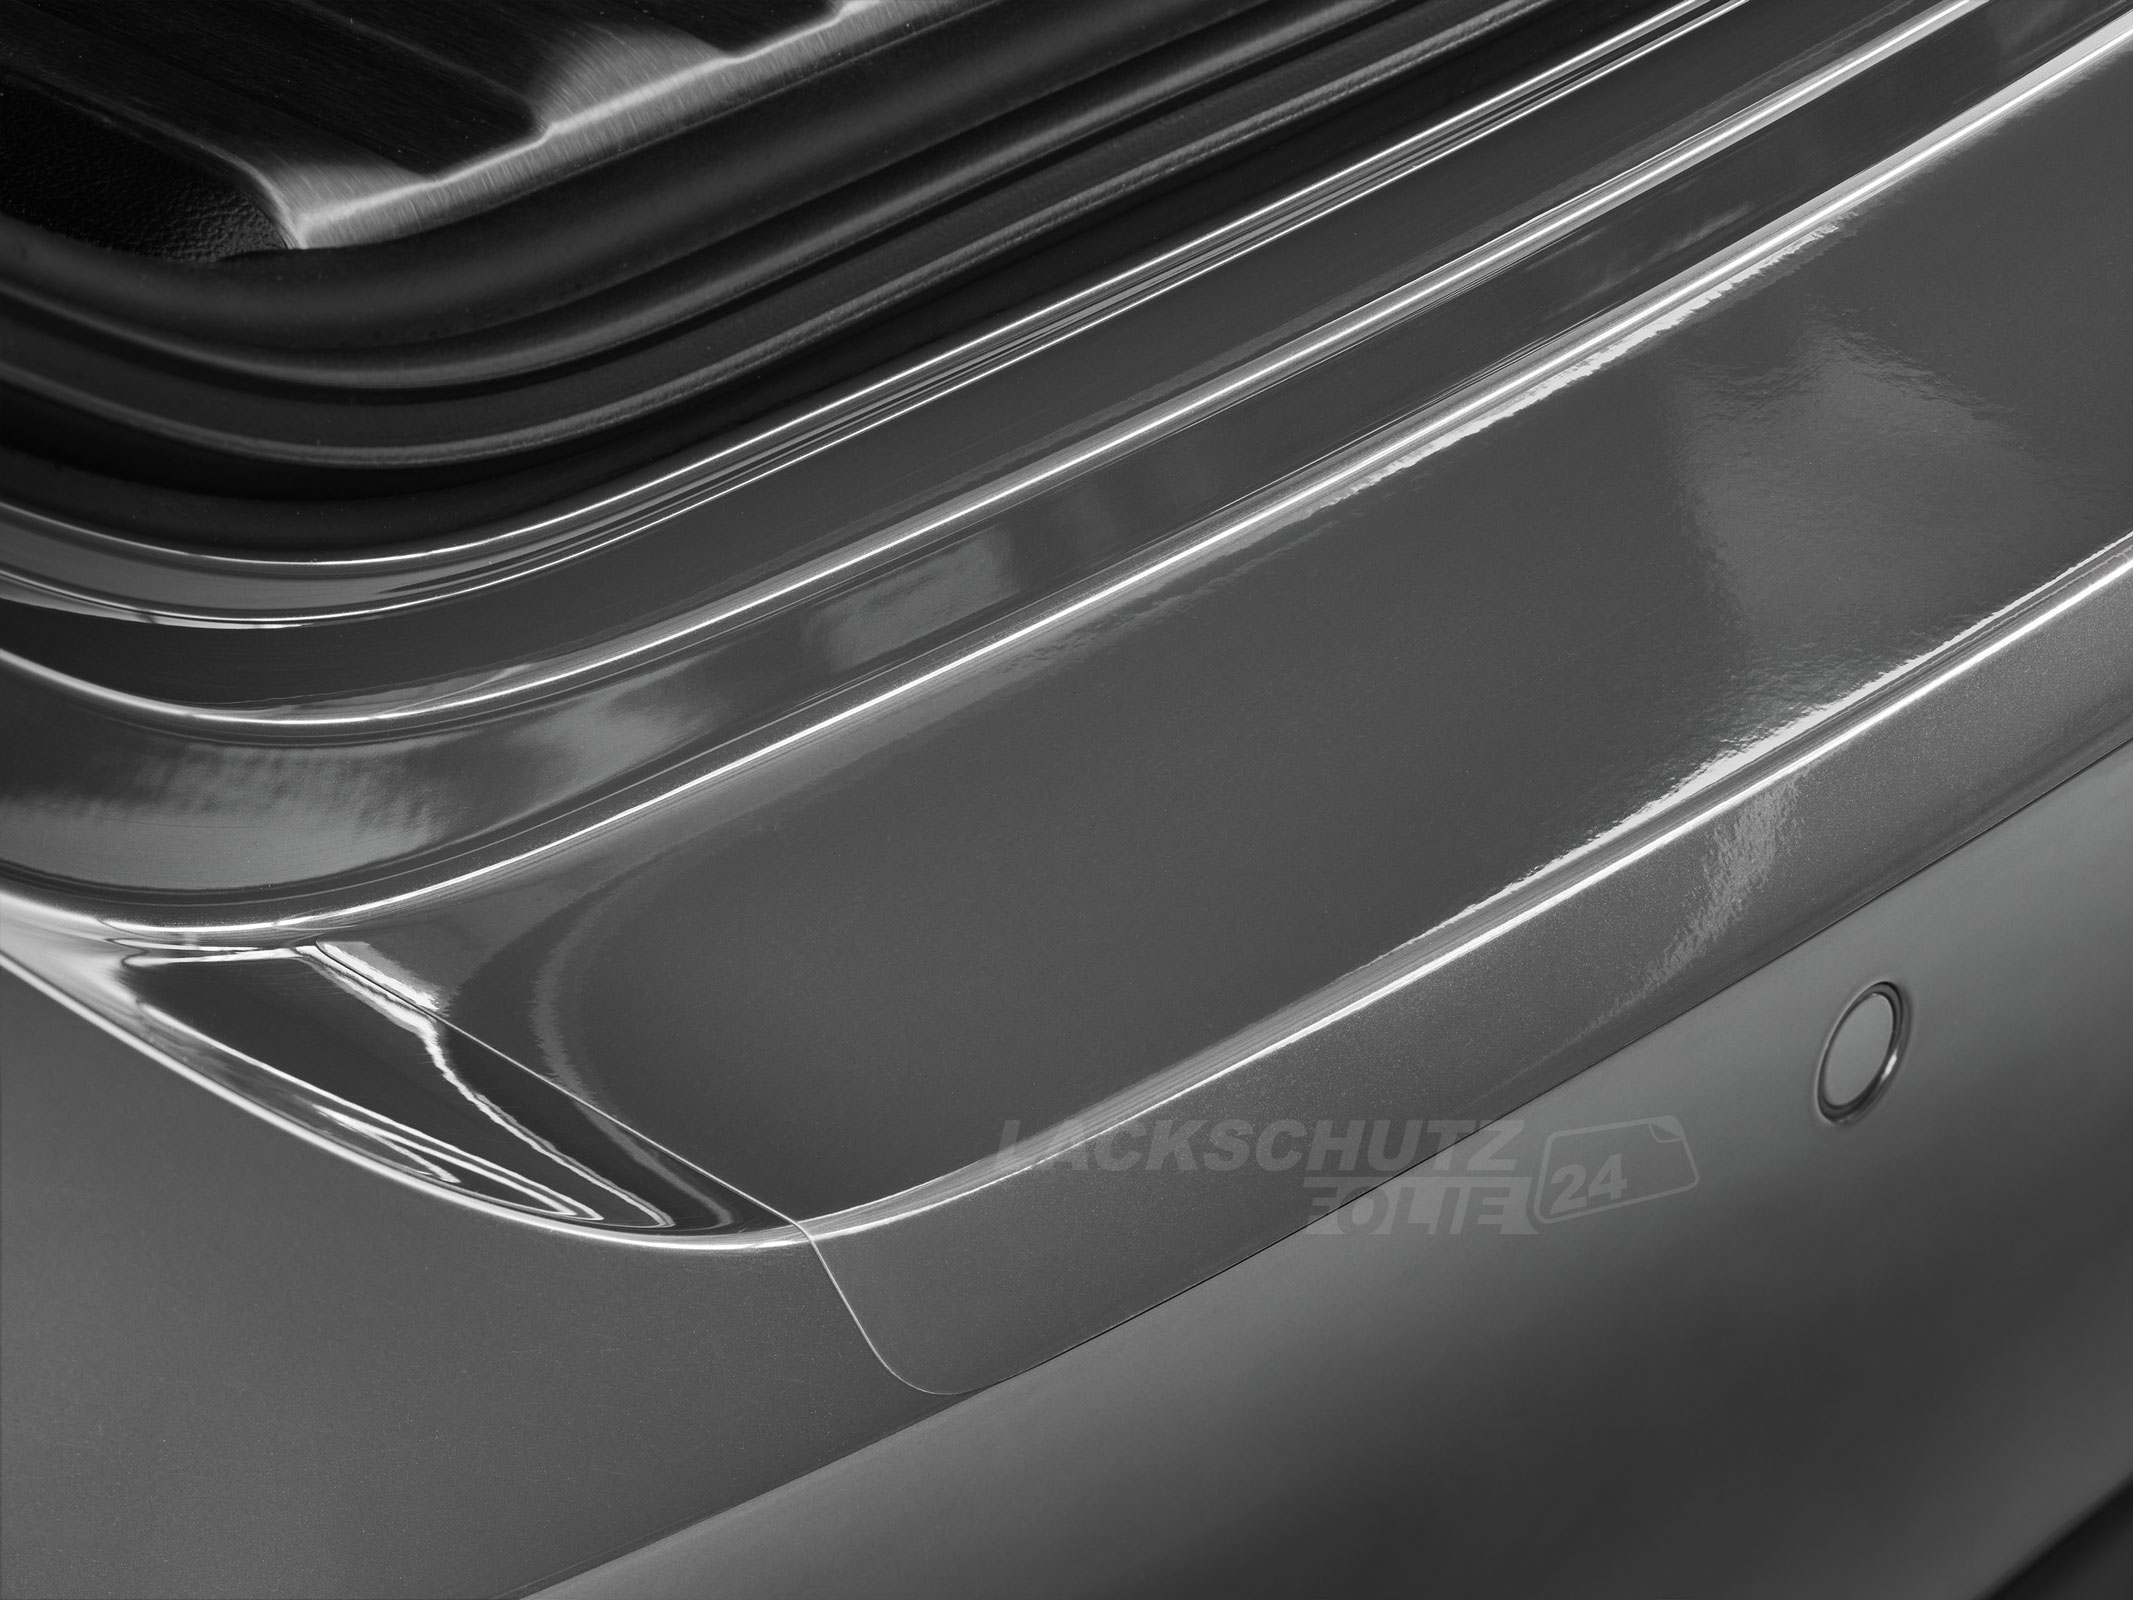 Ladekantenschutzfolie - Transparent Glatt Hochglänzend 150 µm stark für VW / Volkswagen Touran CROSS (I) Typ 1T/GP, BJ 2007-2011